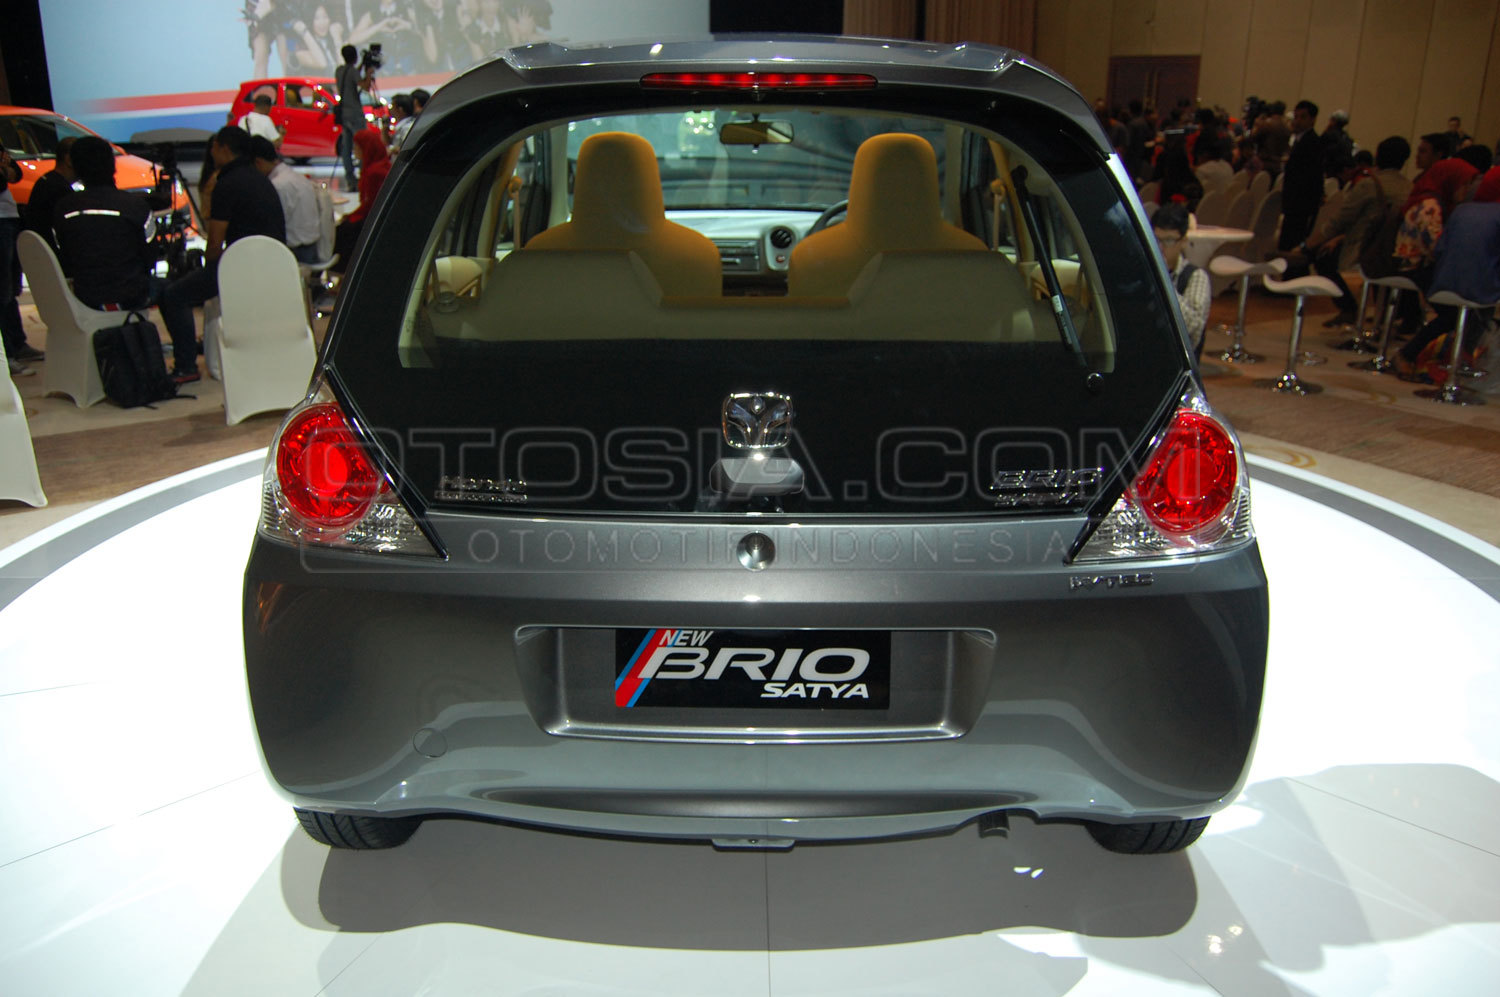 Honda Brio Satya Serap Konsumen Upgrade Merdekacom